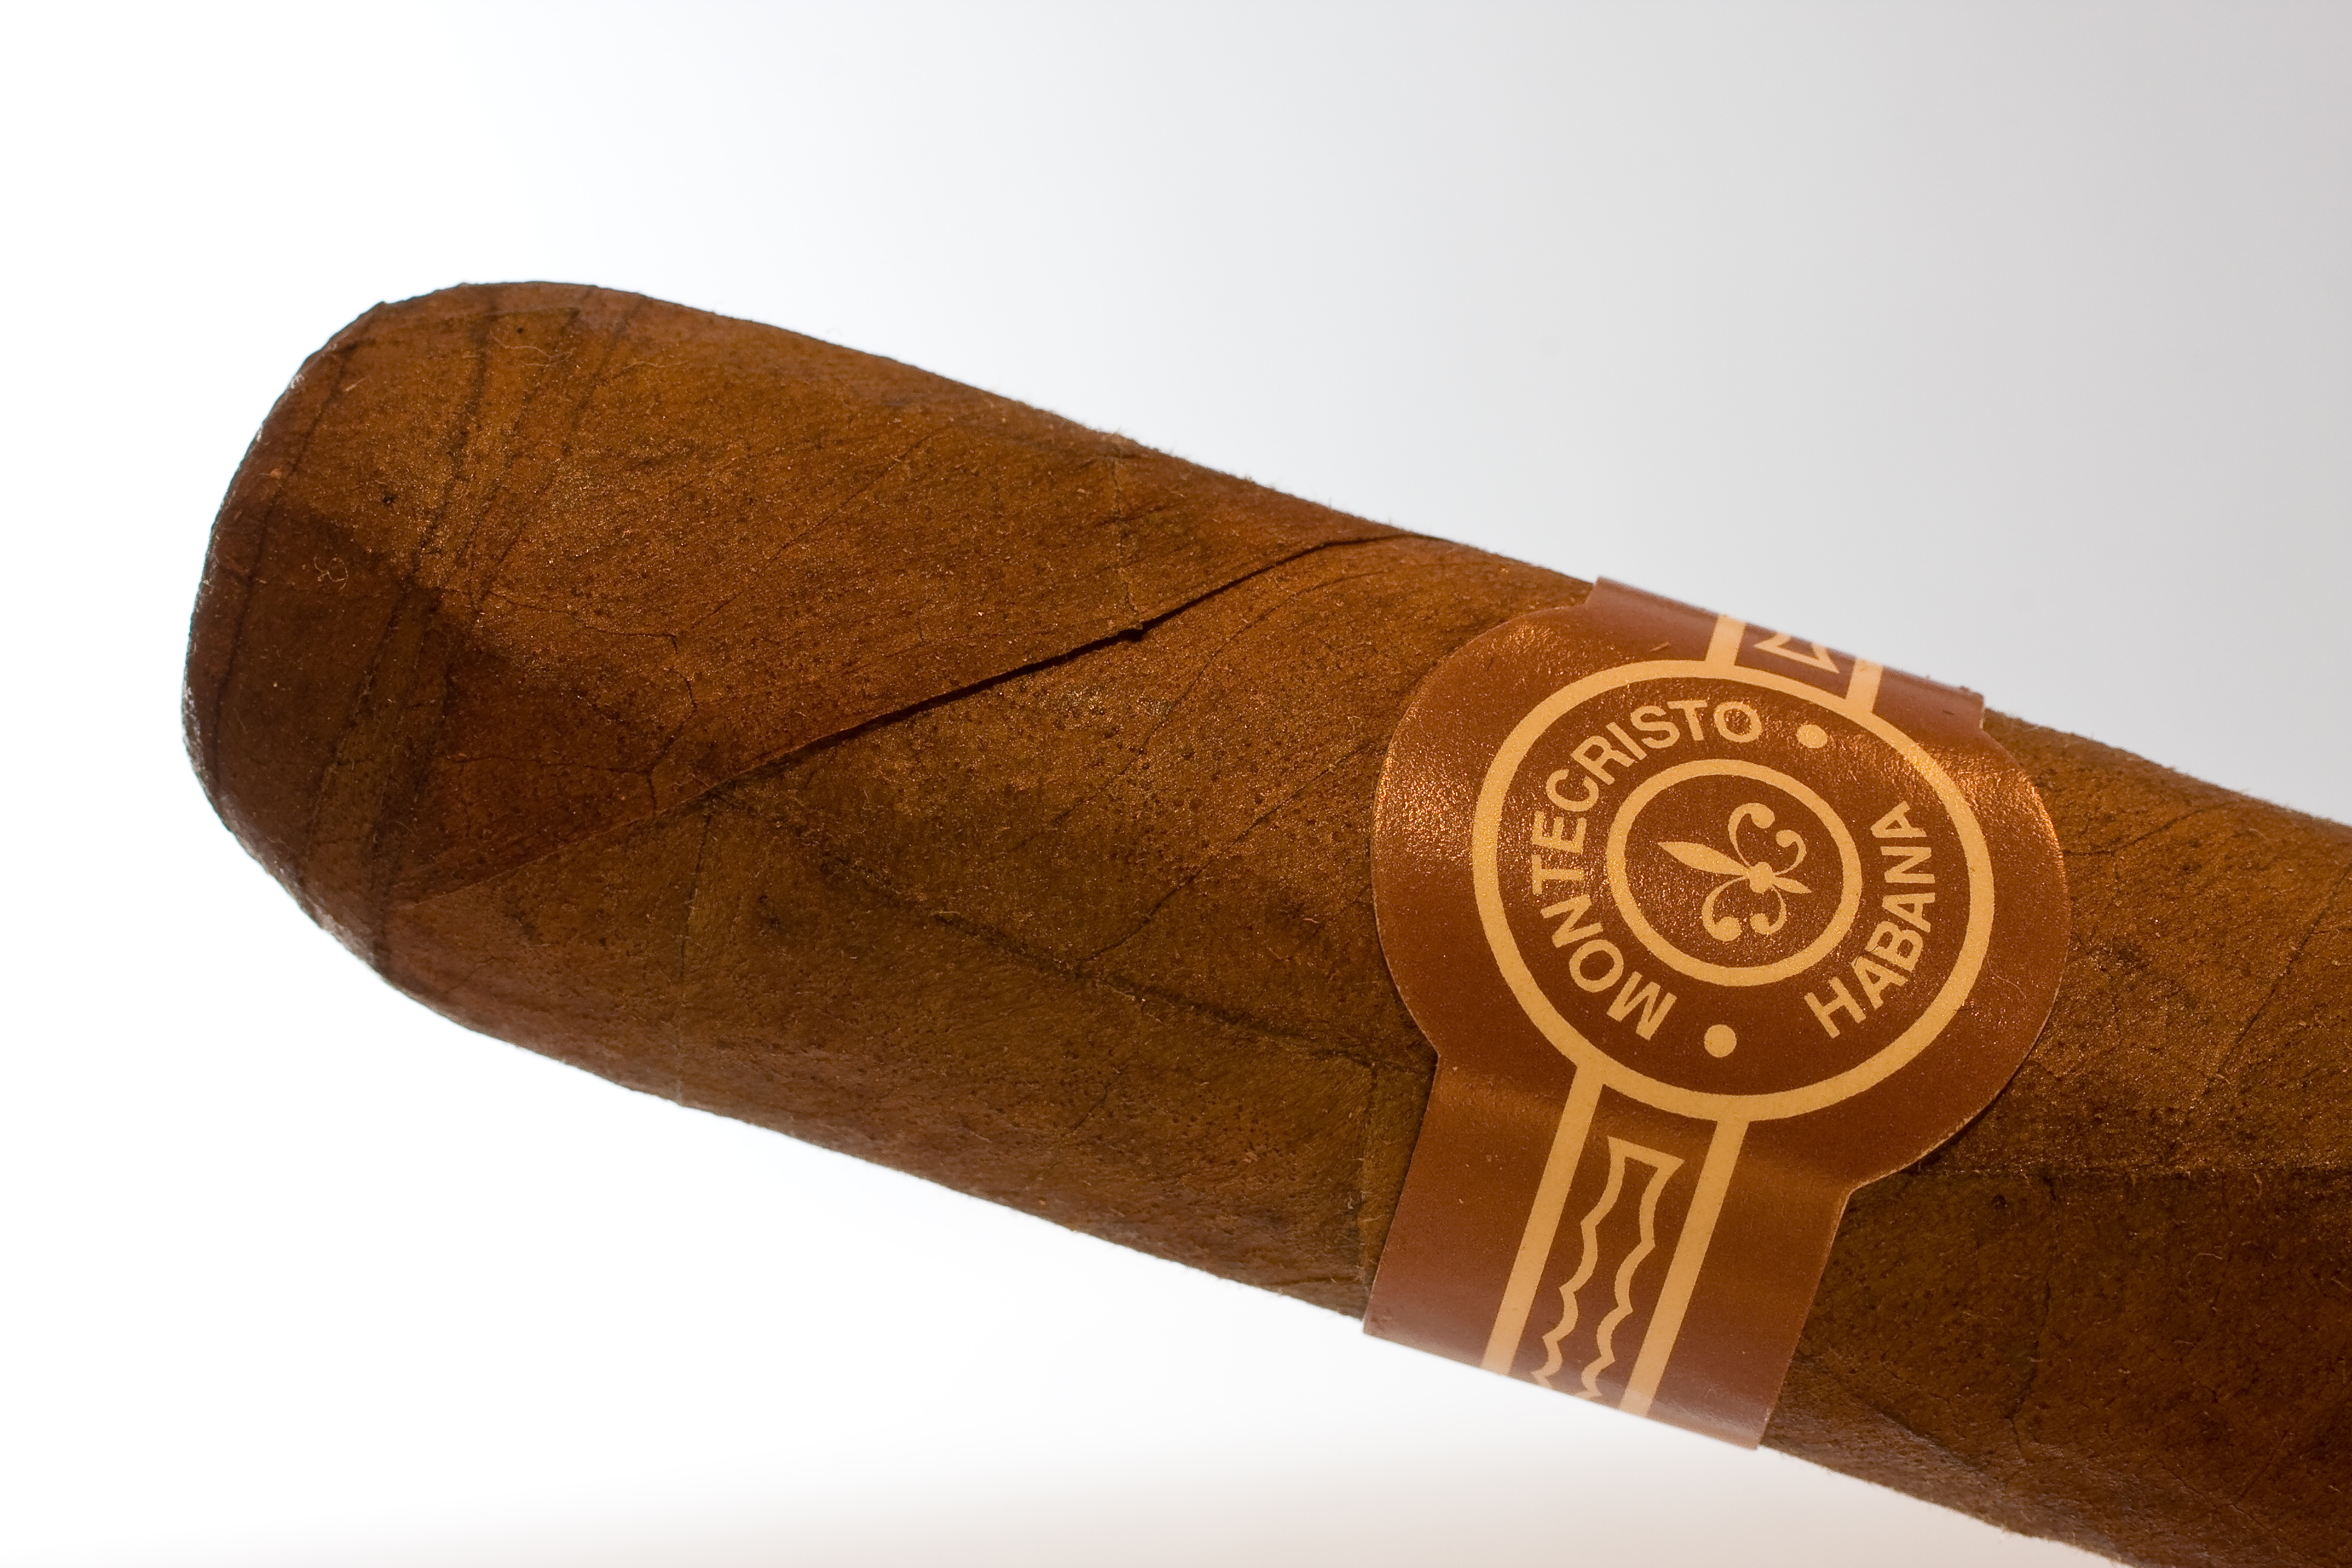 A Montecristo cigar